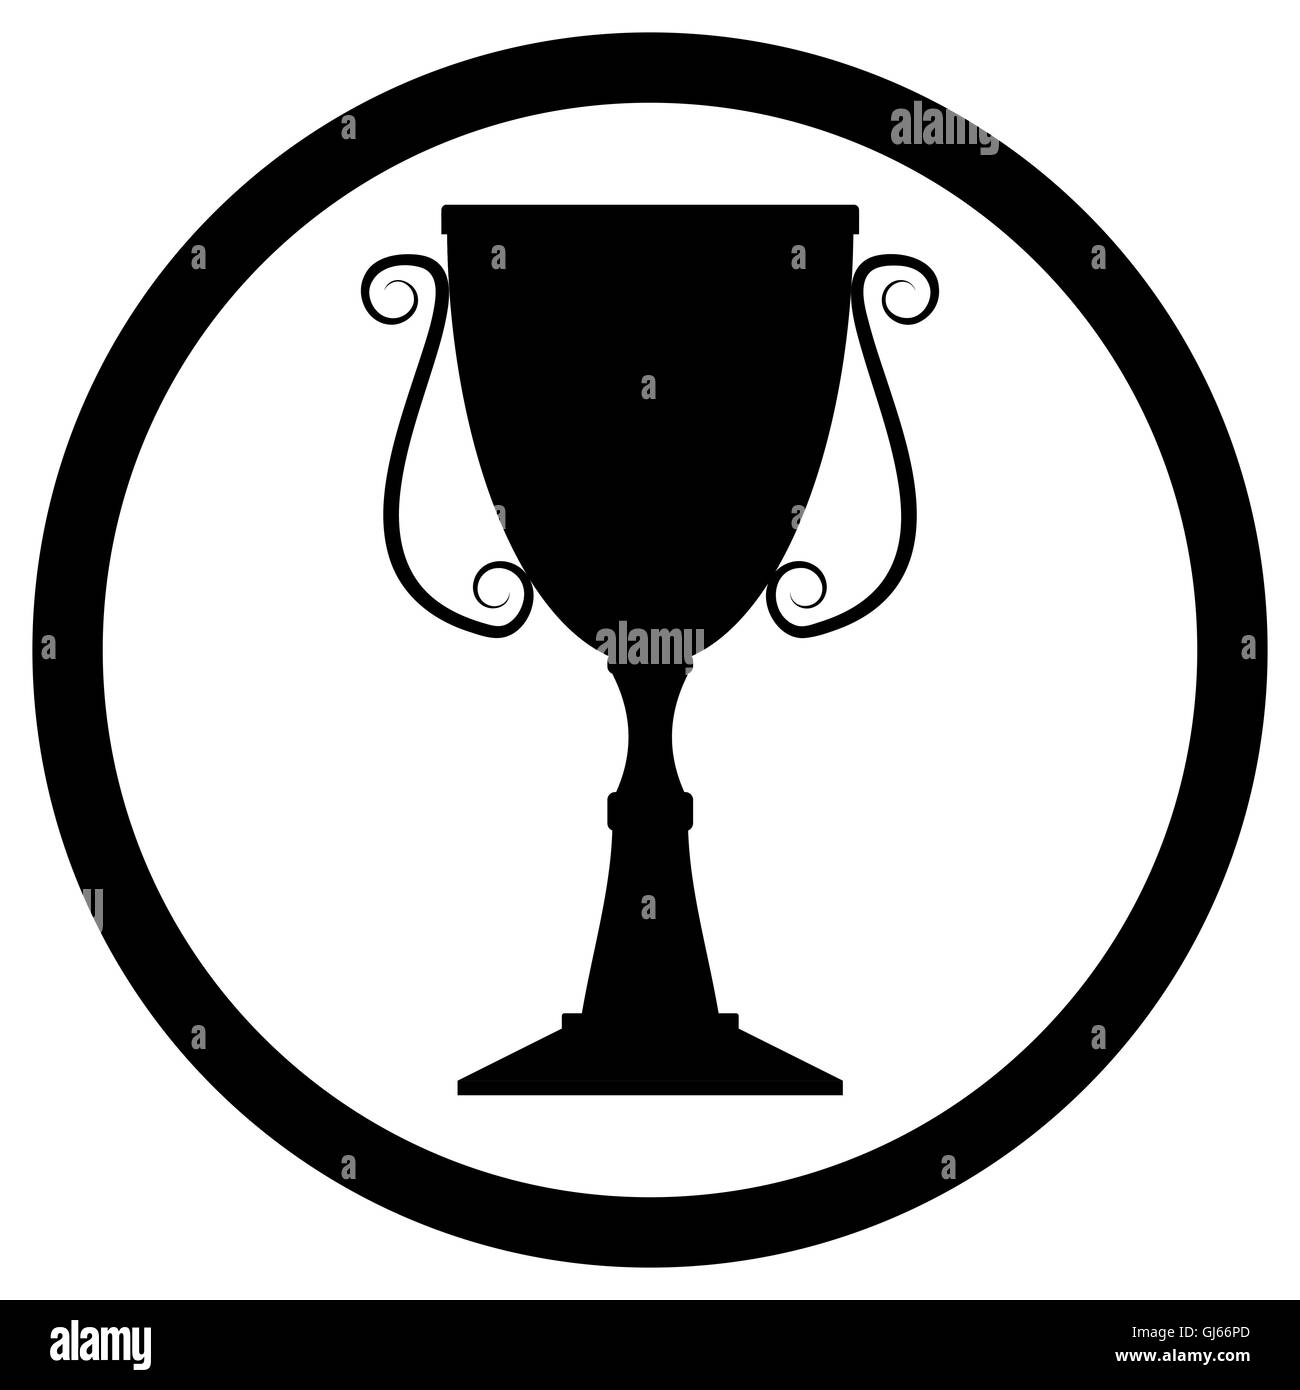 Cup Trofeo nero. Icona del trofeo per aggiudicazione, icona calice monocromatico. Illustrazione Vettoriale Foto Stock